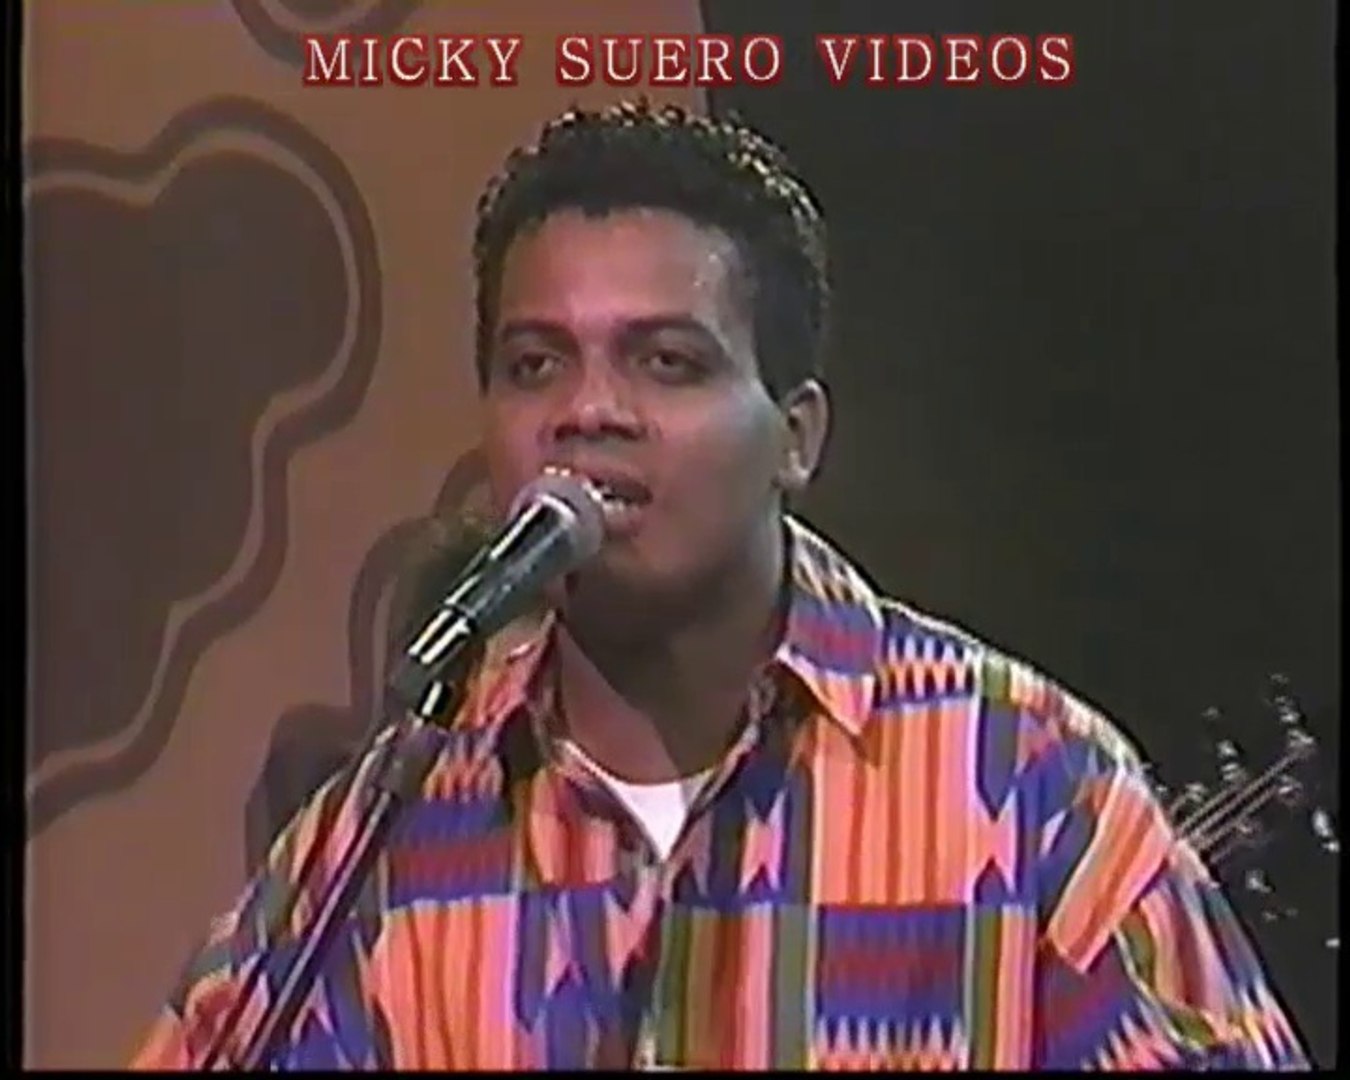 Coco band 2 temas - A Usted Lo Botan Y Salsa con Coco - MICKY SUERO CANAL -  Vídeo Dailymotion